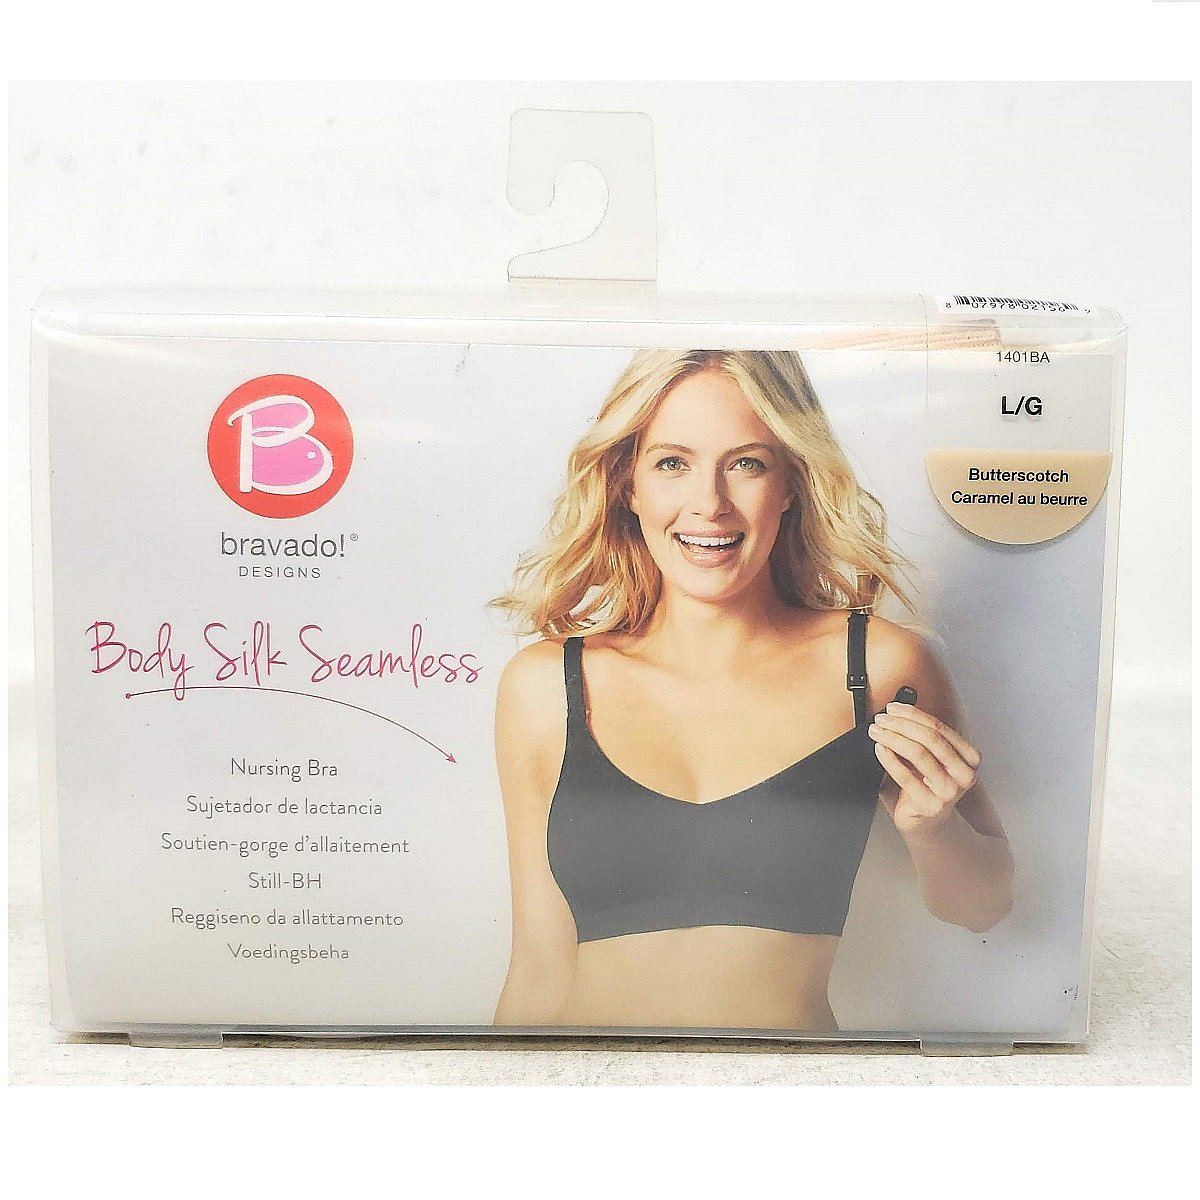 Powermax Sale - Body Silk Seamless Nursing Bra Butterscotch Large -1 pc,  (Bravado Designs)